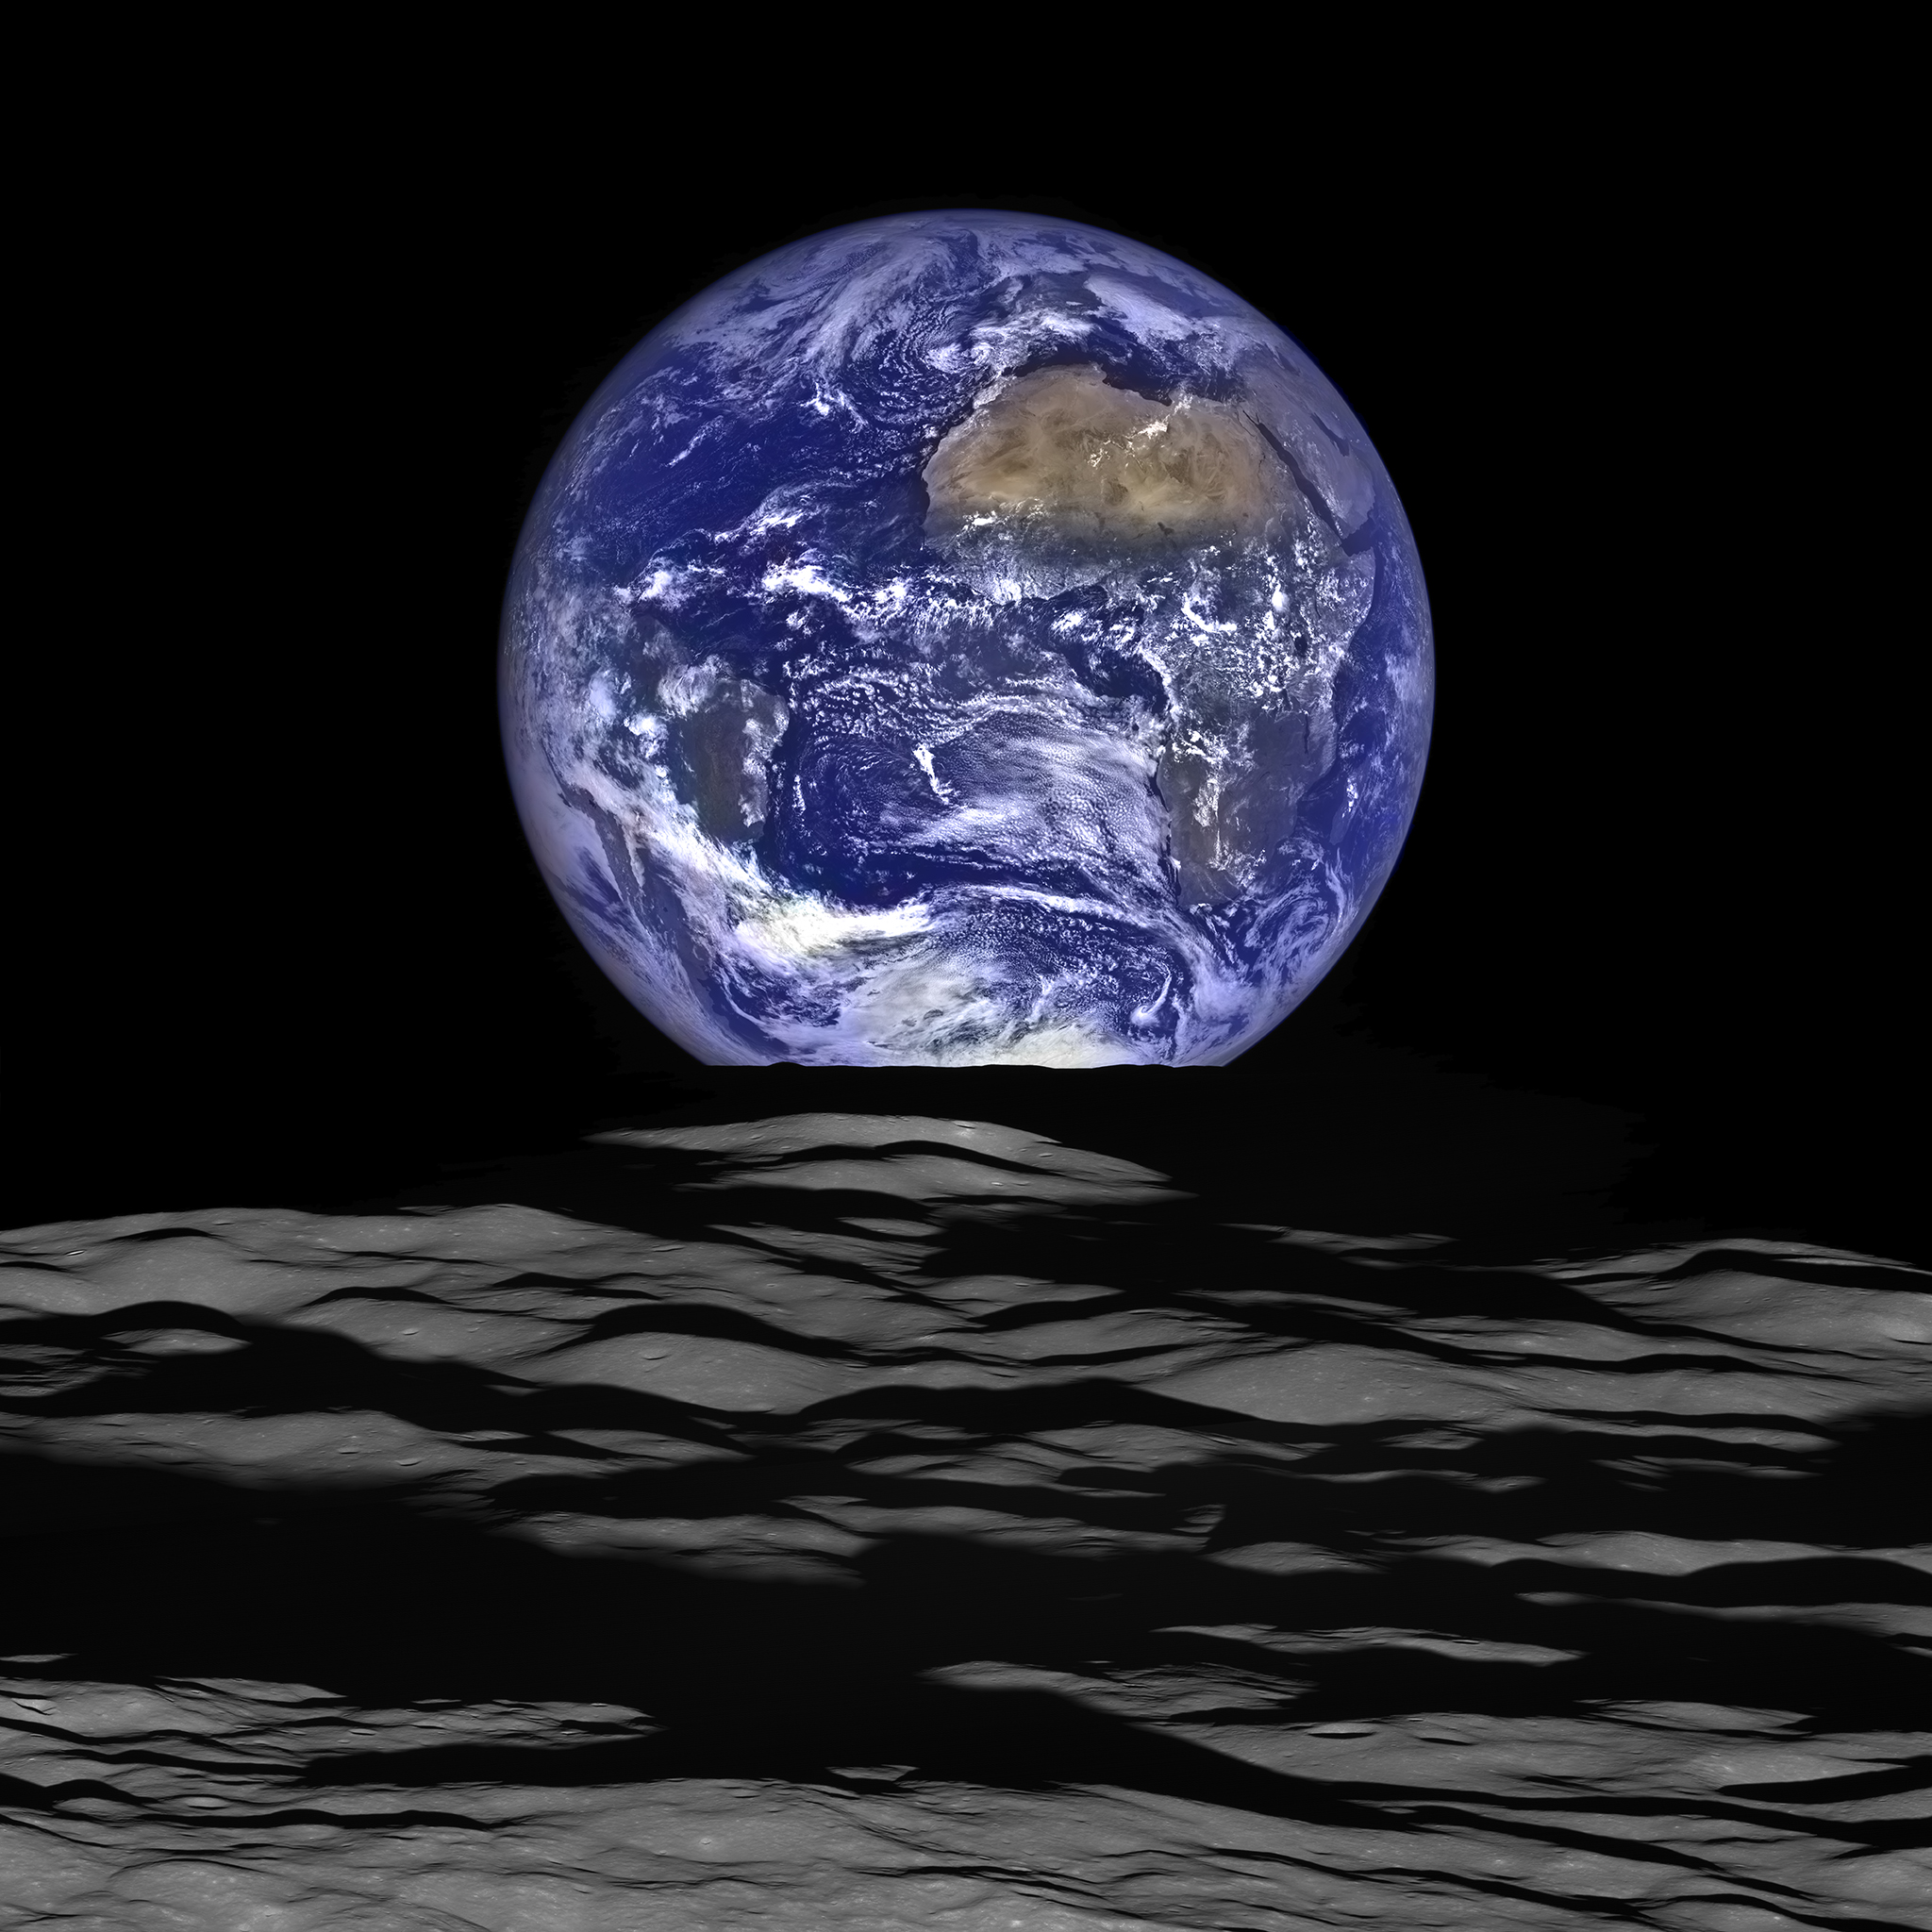 colorful earth rising over barren lunar landscape